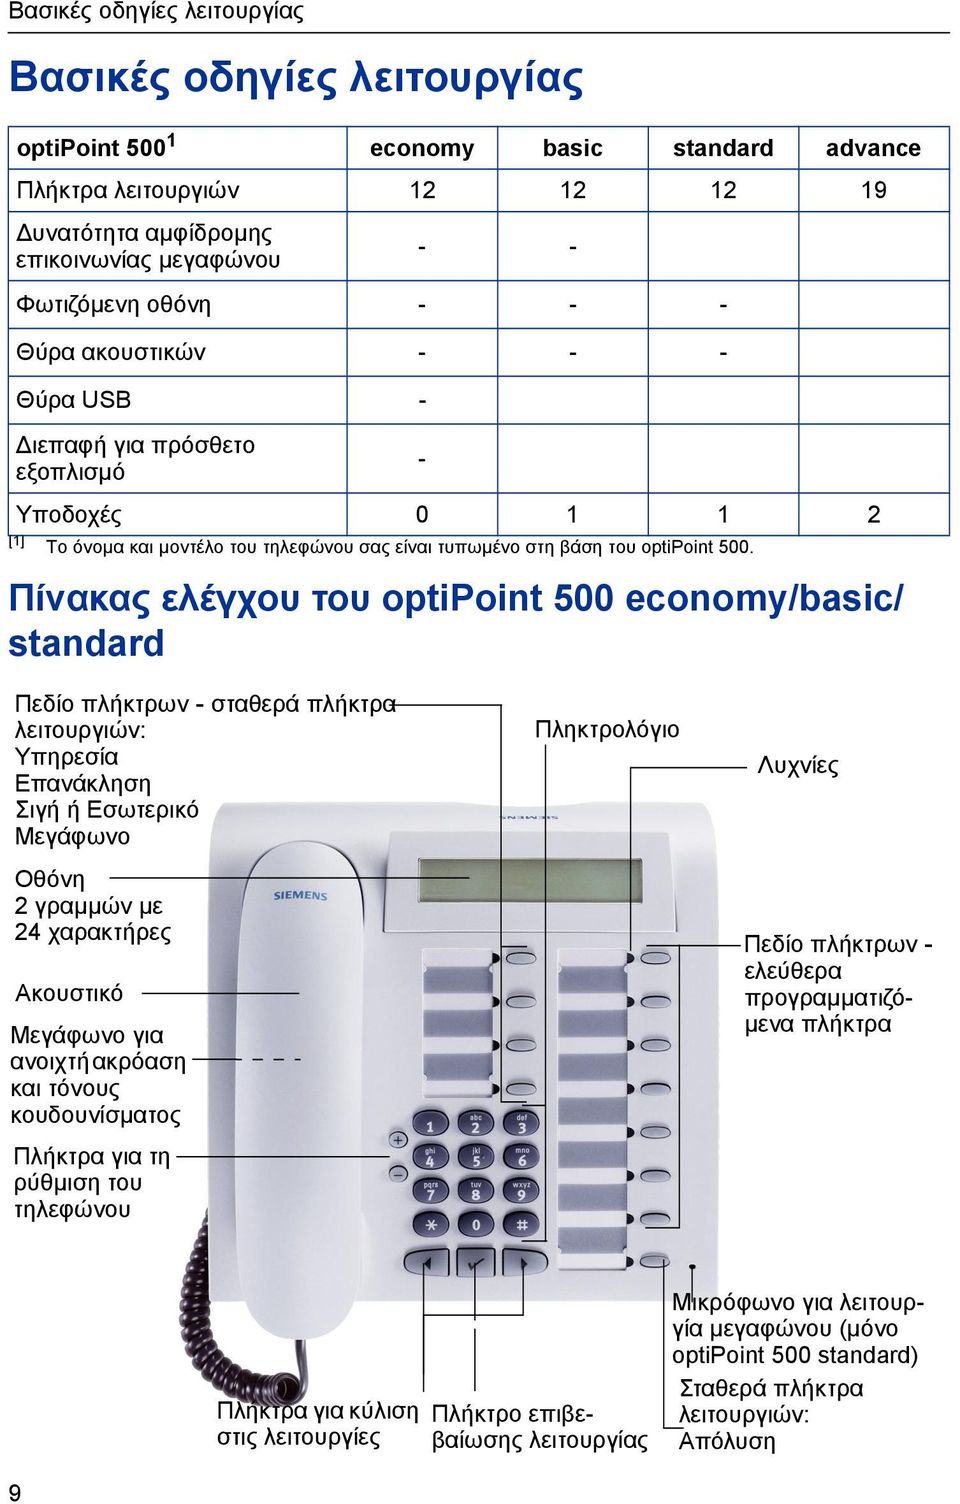 Πίνακας ελέγχου του ptipint 500 ecnmy/basic/ standard Πεδίο πλκτρων - σταθερά πλκτρα λειτουργιών: Υπηρεσία Επανάκληση Σιγ Εσωτερικό Μεγάφωνο Οθόνη 2 γραµµών µε 24 χαρακτρες Ακουστικό Μεγάφωνο για